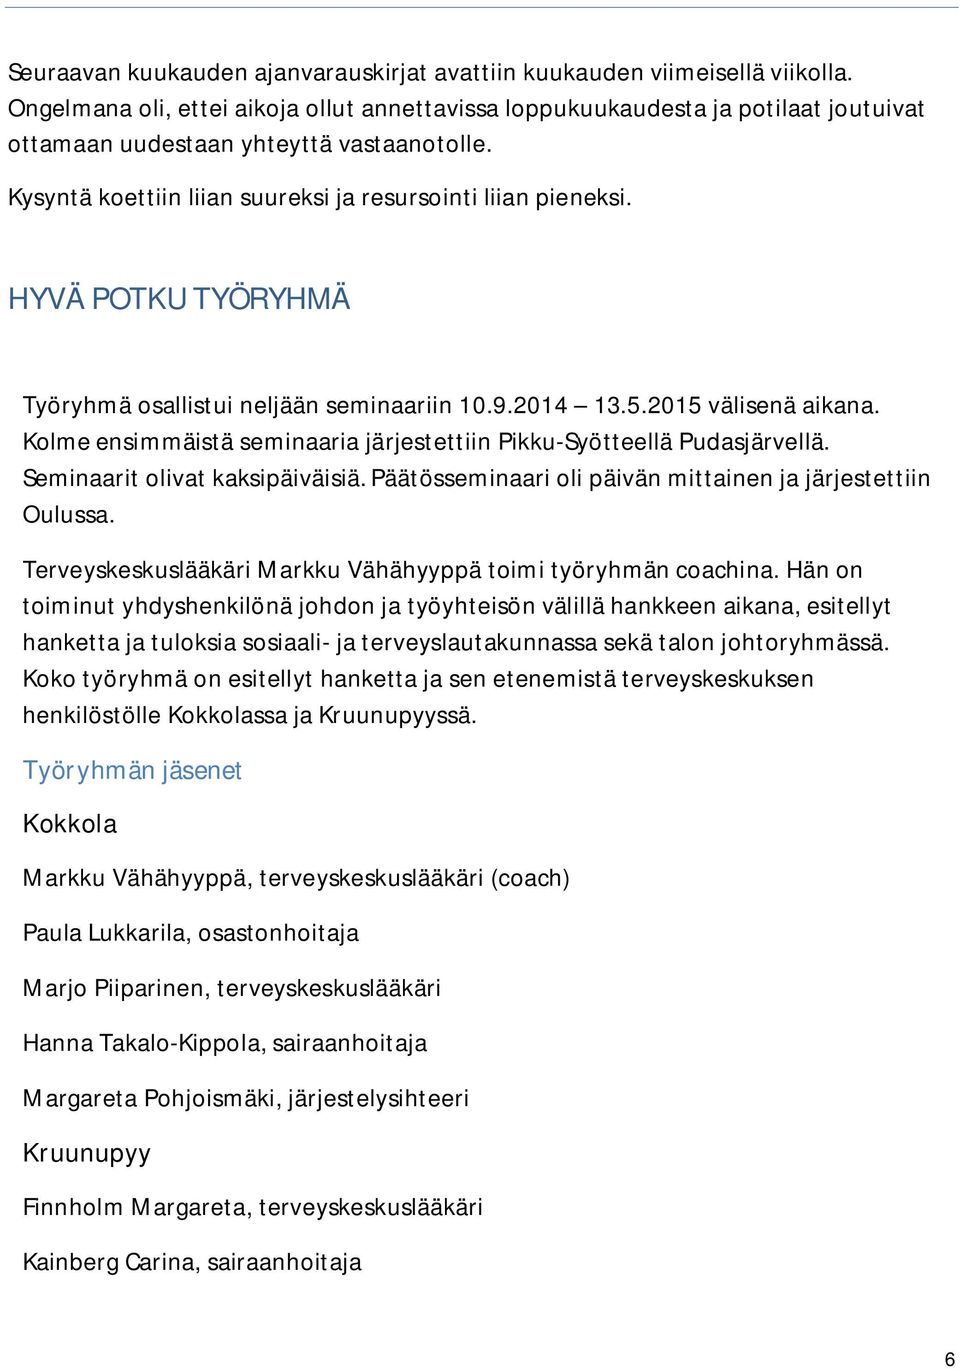 HYVÄ POTKU TYÖRYHMÄ Työryhmä osallistui neljään seminaariin 10.9.2014 13.5.2015 välisenä aikana. Kolme ensimmäistä seminaaria järjestettiin Pikku-Syötteellä Pudasjärvellä.